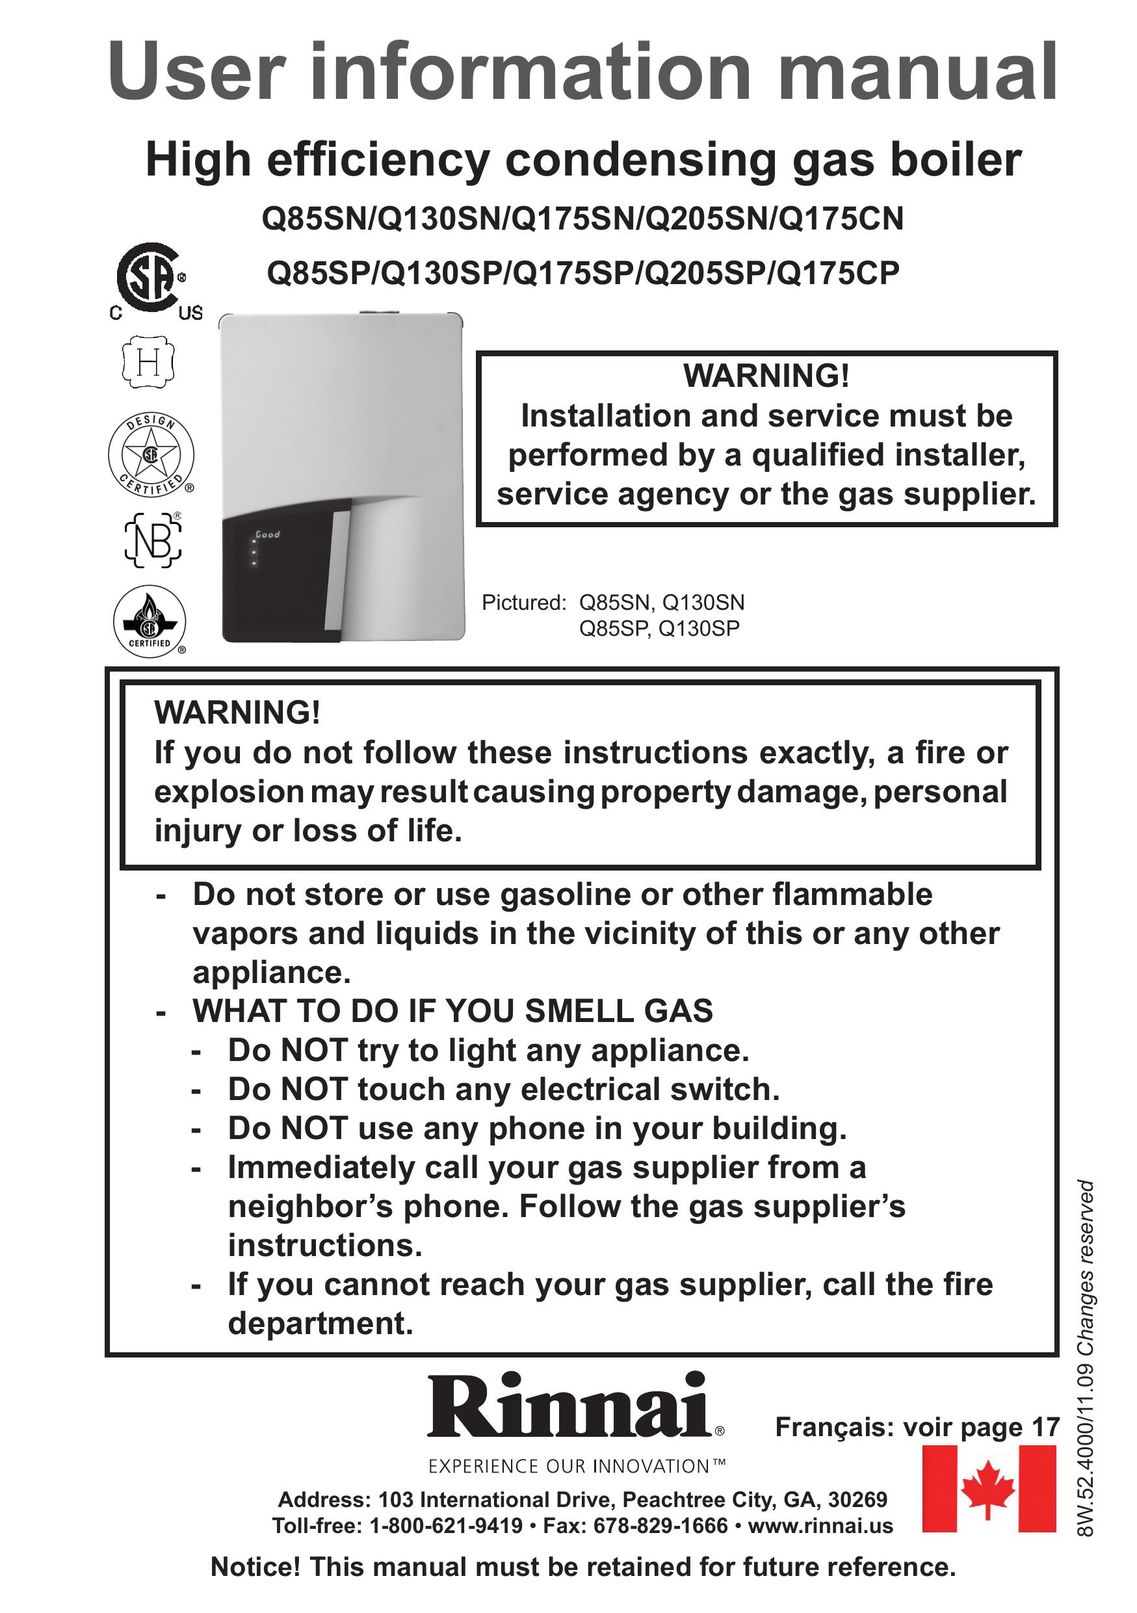 Rinnai Q175CP Boiler User Manual